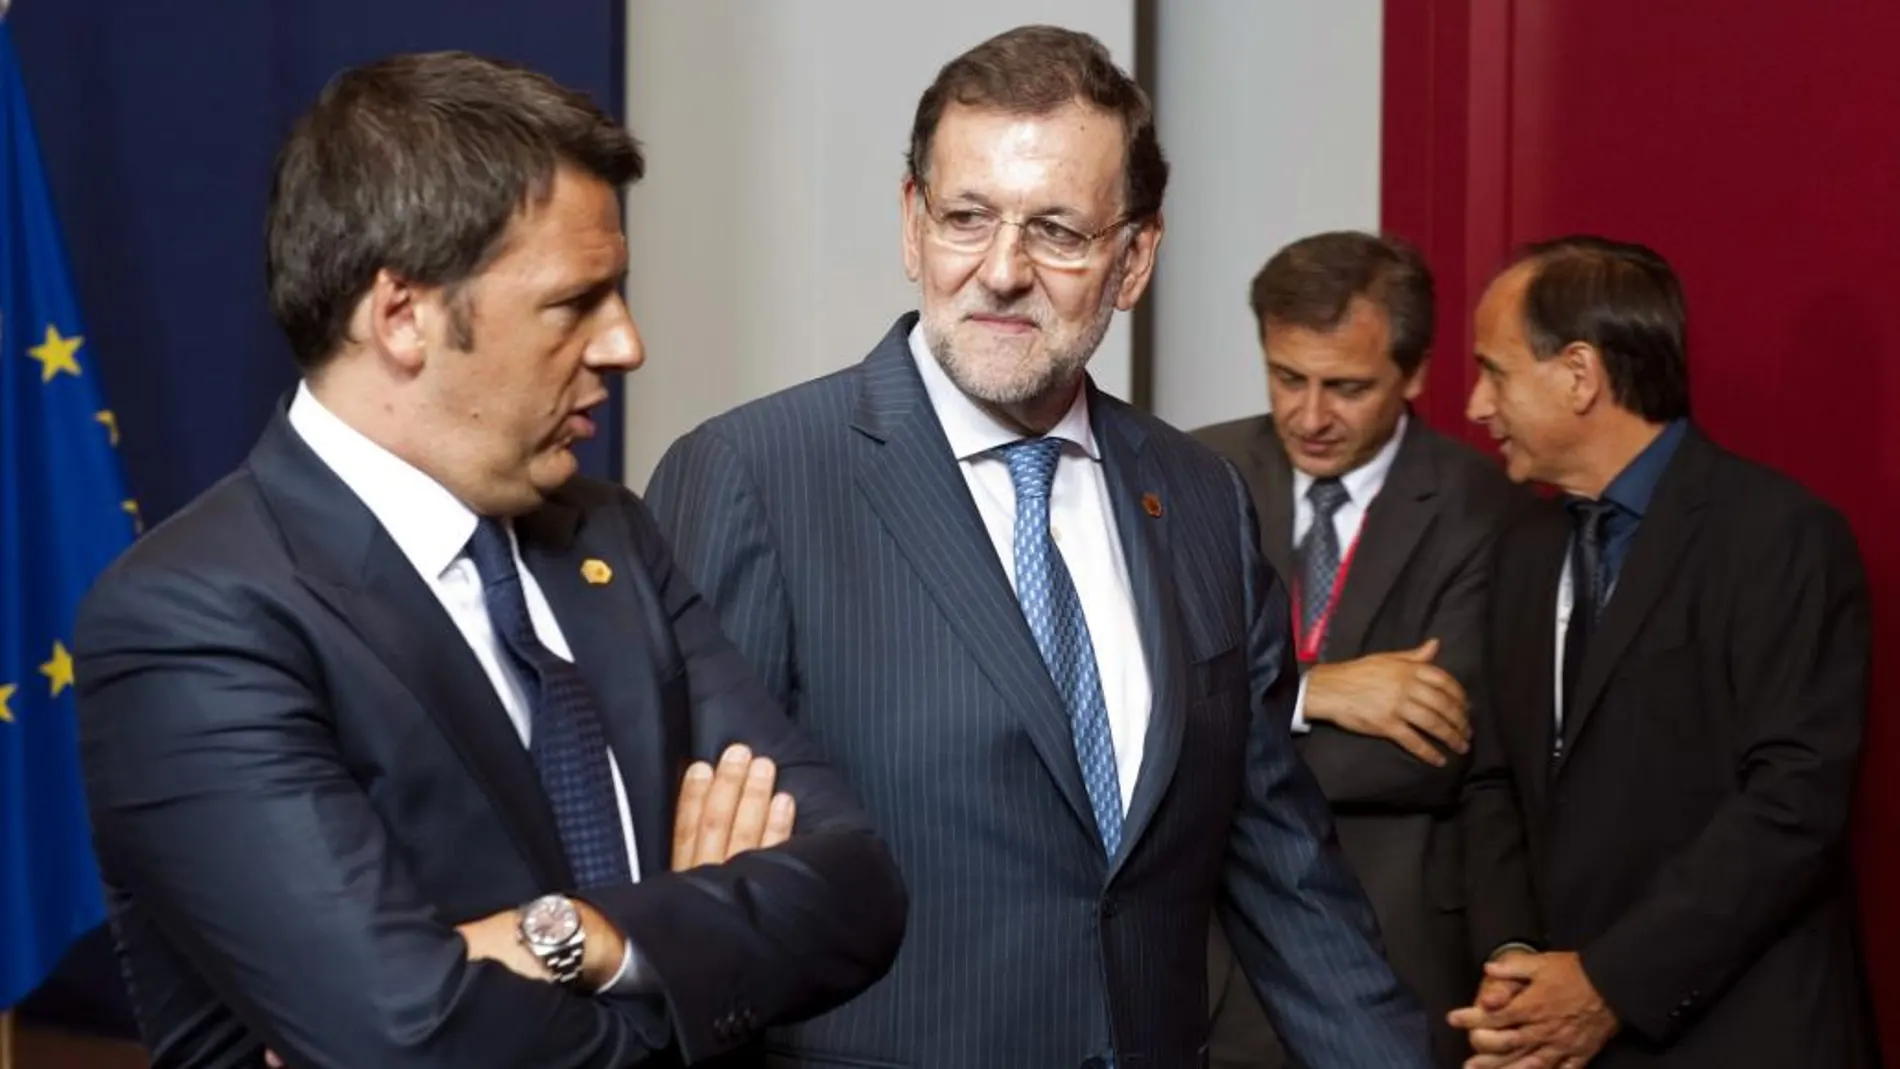 El presidente del Gobierno español, Mariano Rajoy (d), conversa con el primer ministro italiano, Matteo Renzi (i) momentos antes de la foto de familia de los líderes europeos